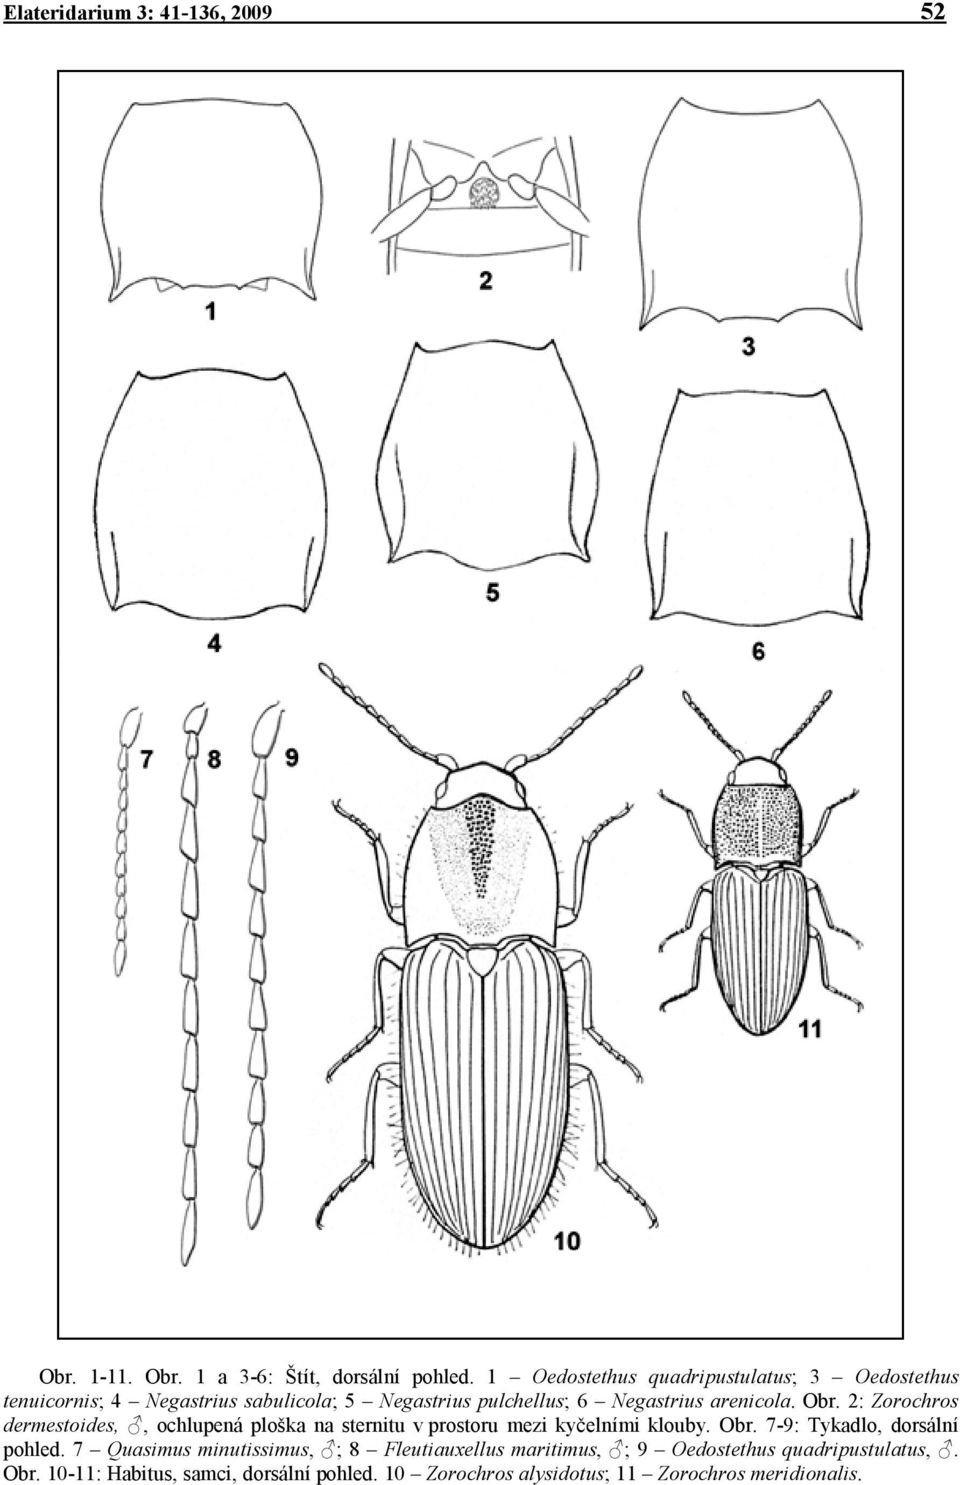 Obr. 2: Zorochros dermestoides,, ochlupená ploška na sternitu v prostoru mezi kyčelními klouby. Obr. 7-9: Tykadlo, dorsální pohled.